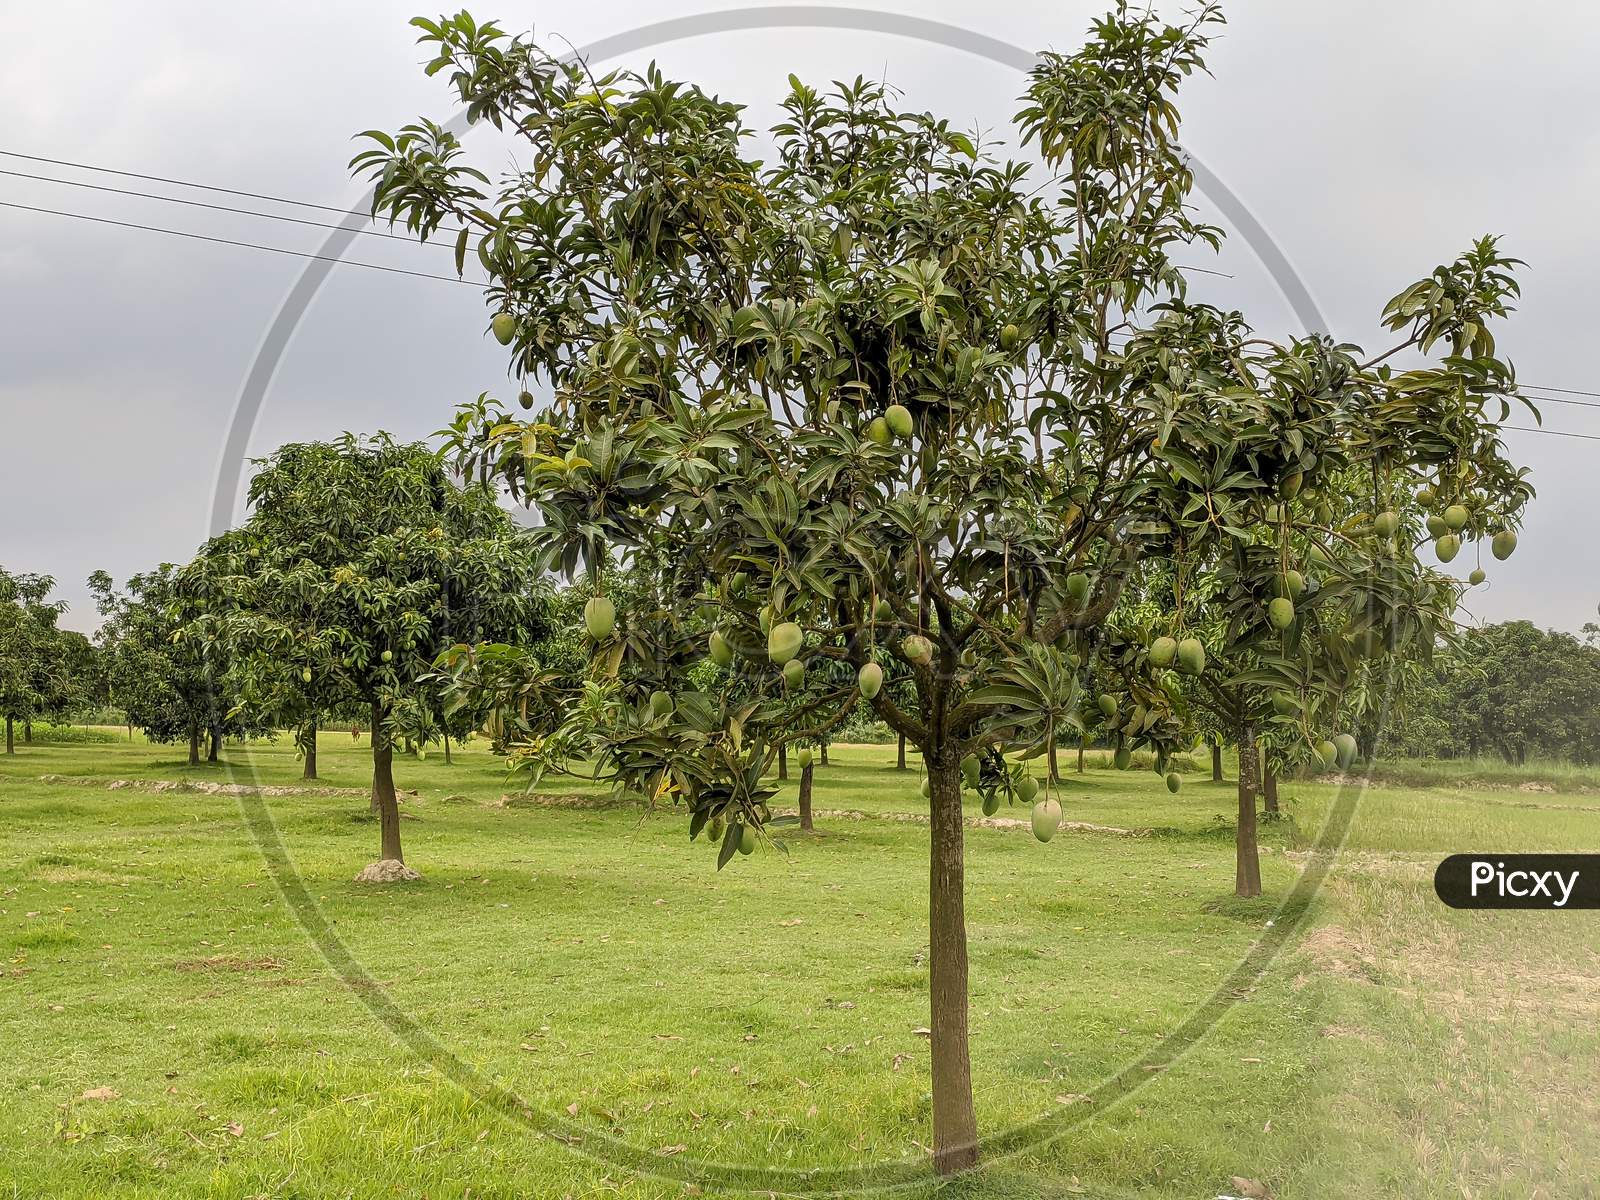 Indian mango tree with mango fruits.